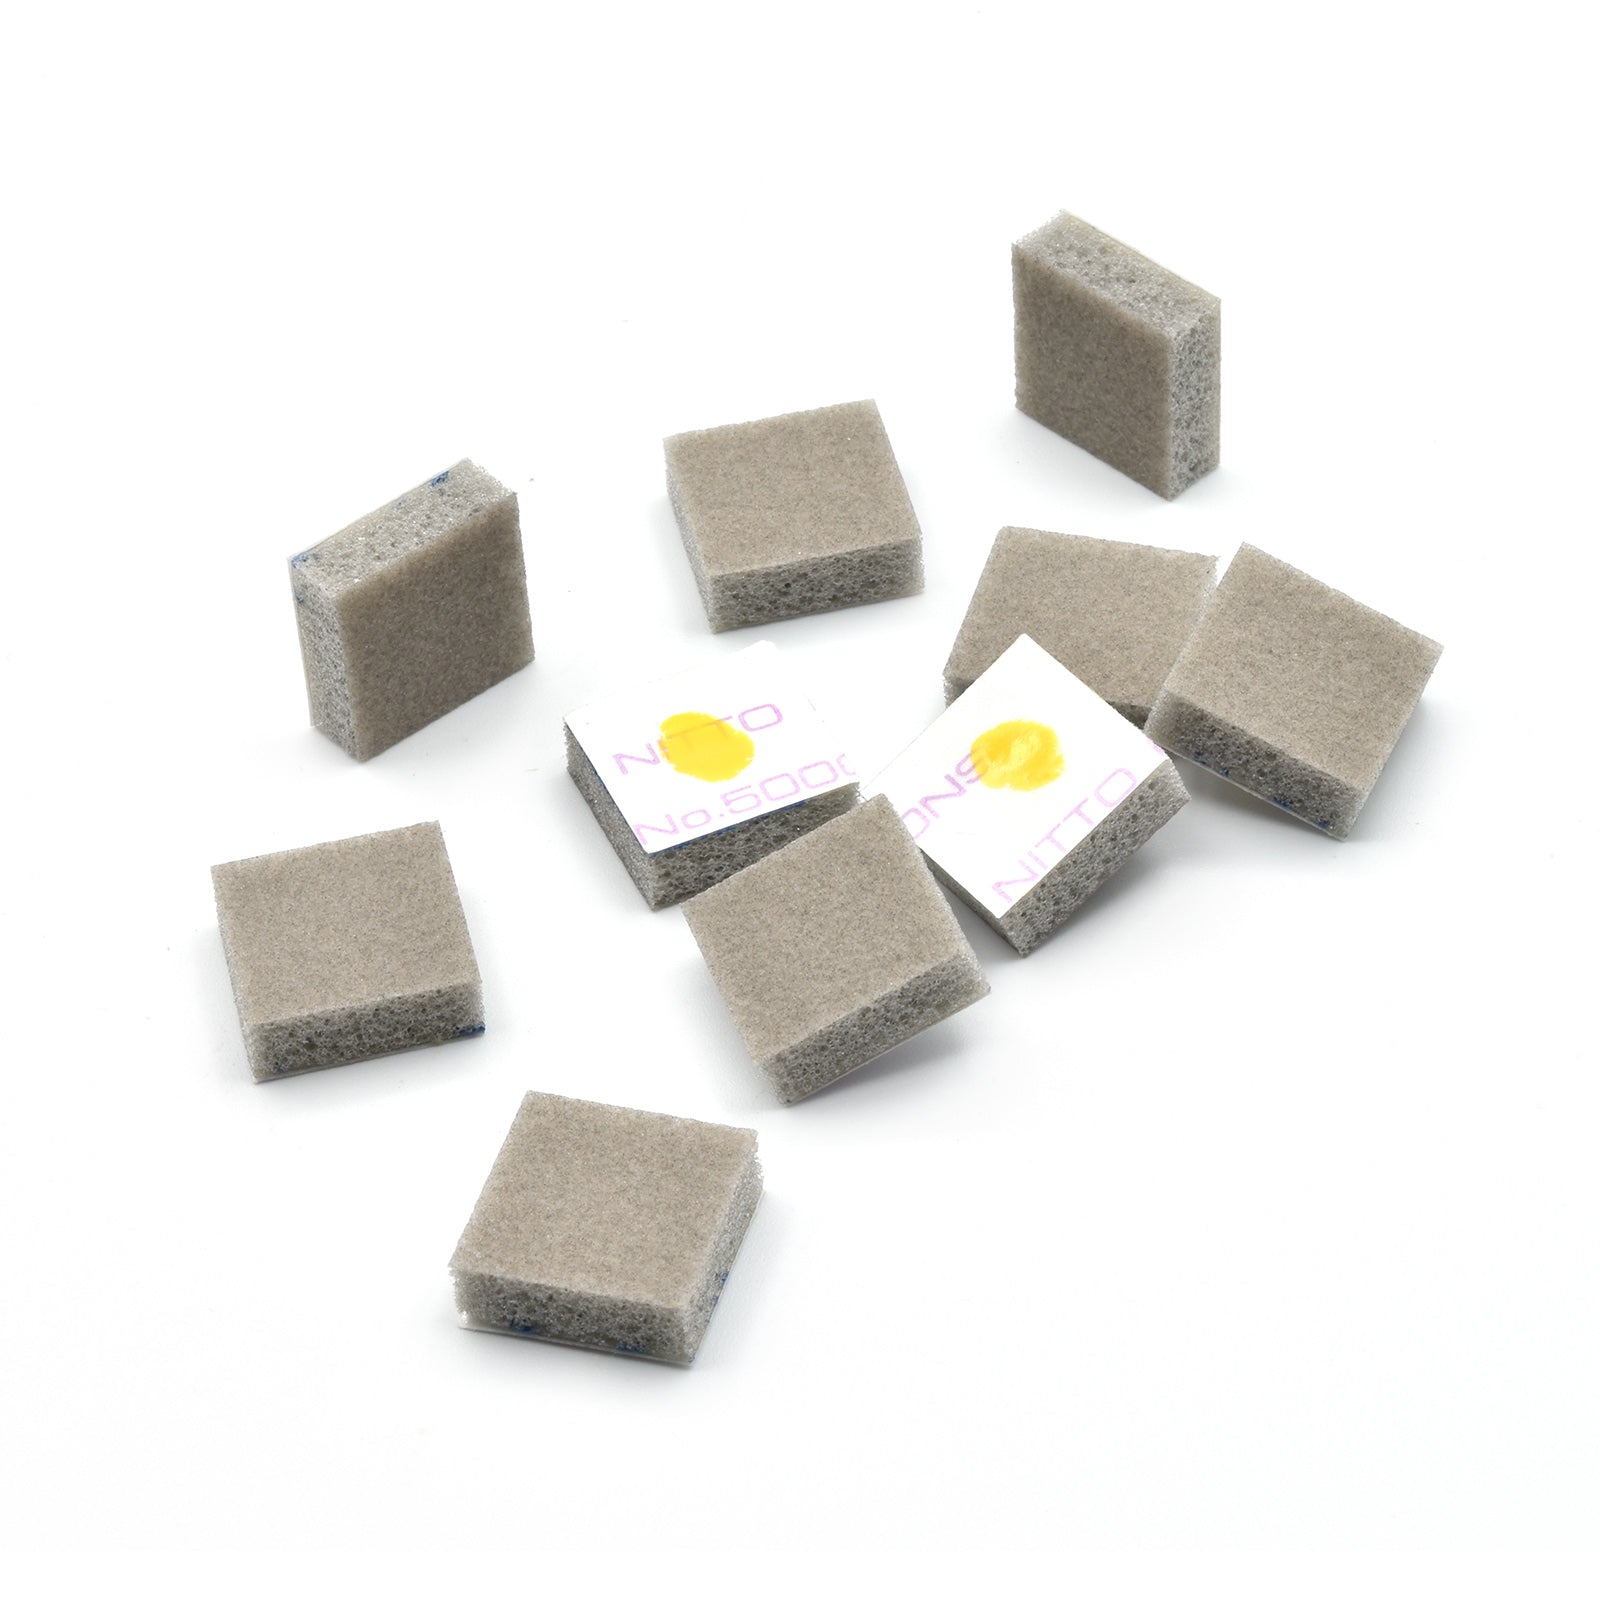 Sanding Sponge Square 800 Grit, 10 Pieces